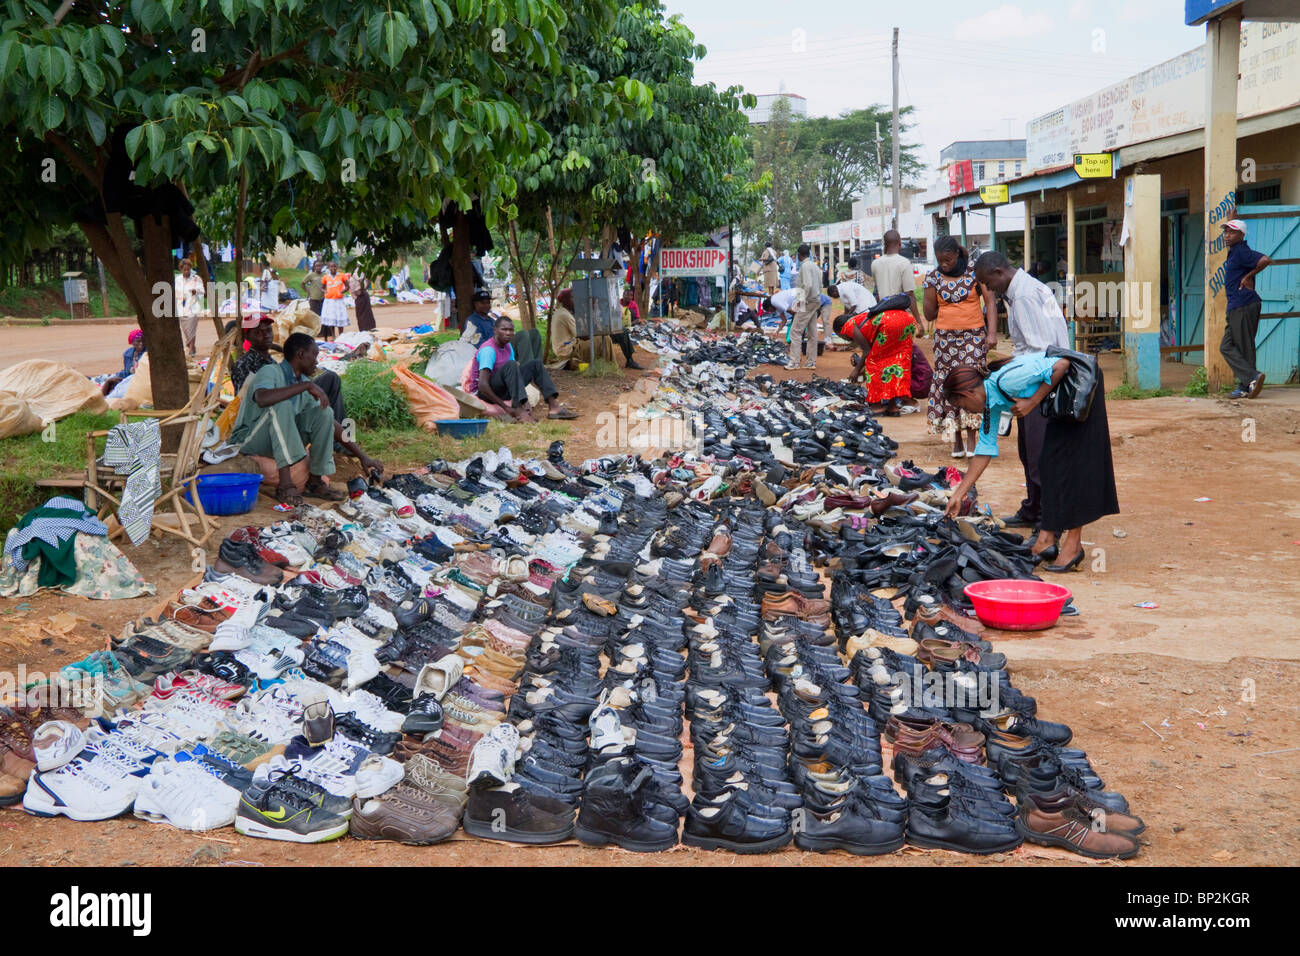 Un marché aux puces en milieu rural au Kenya, des chaussures de rechange. Banque D'Images